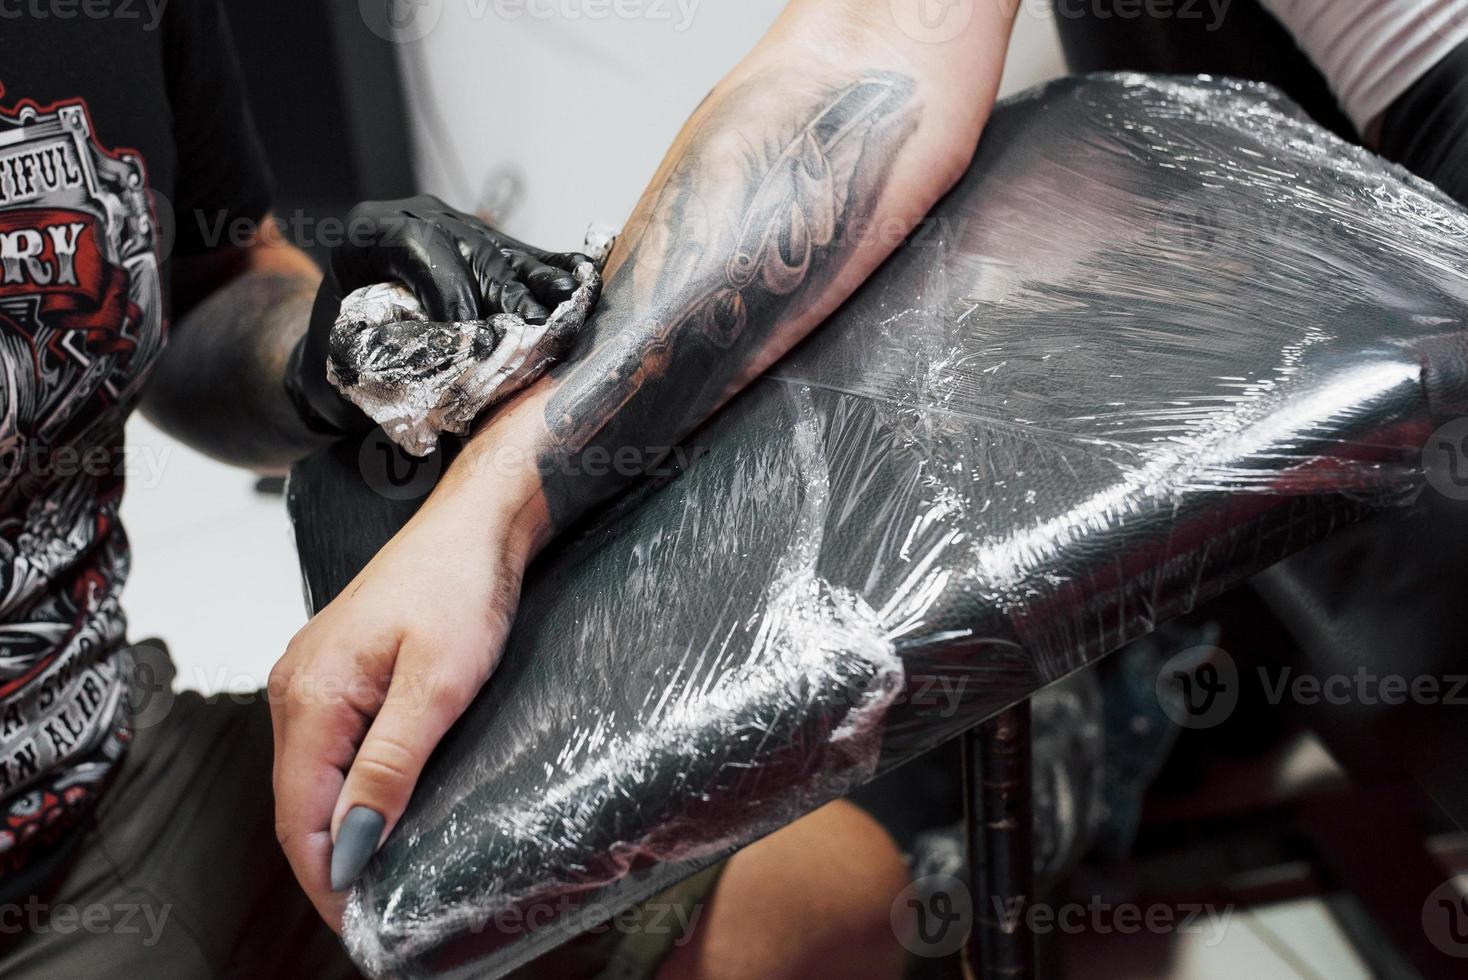 feche a máquina de tatuagem. mestre em luvas esterilizadas pretas criando uma imagem disponível com ele no salão foto